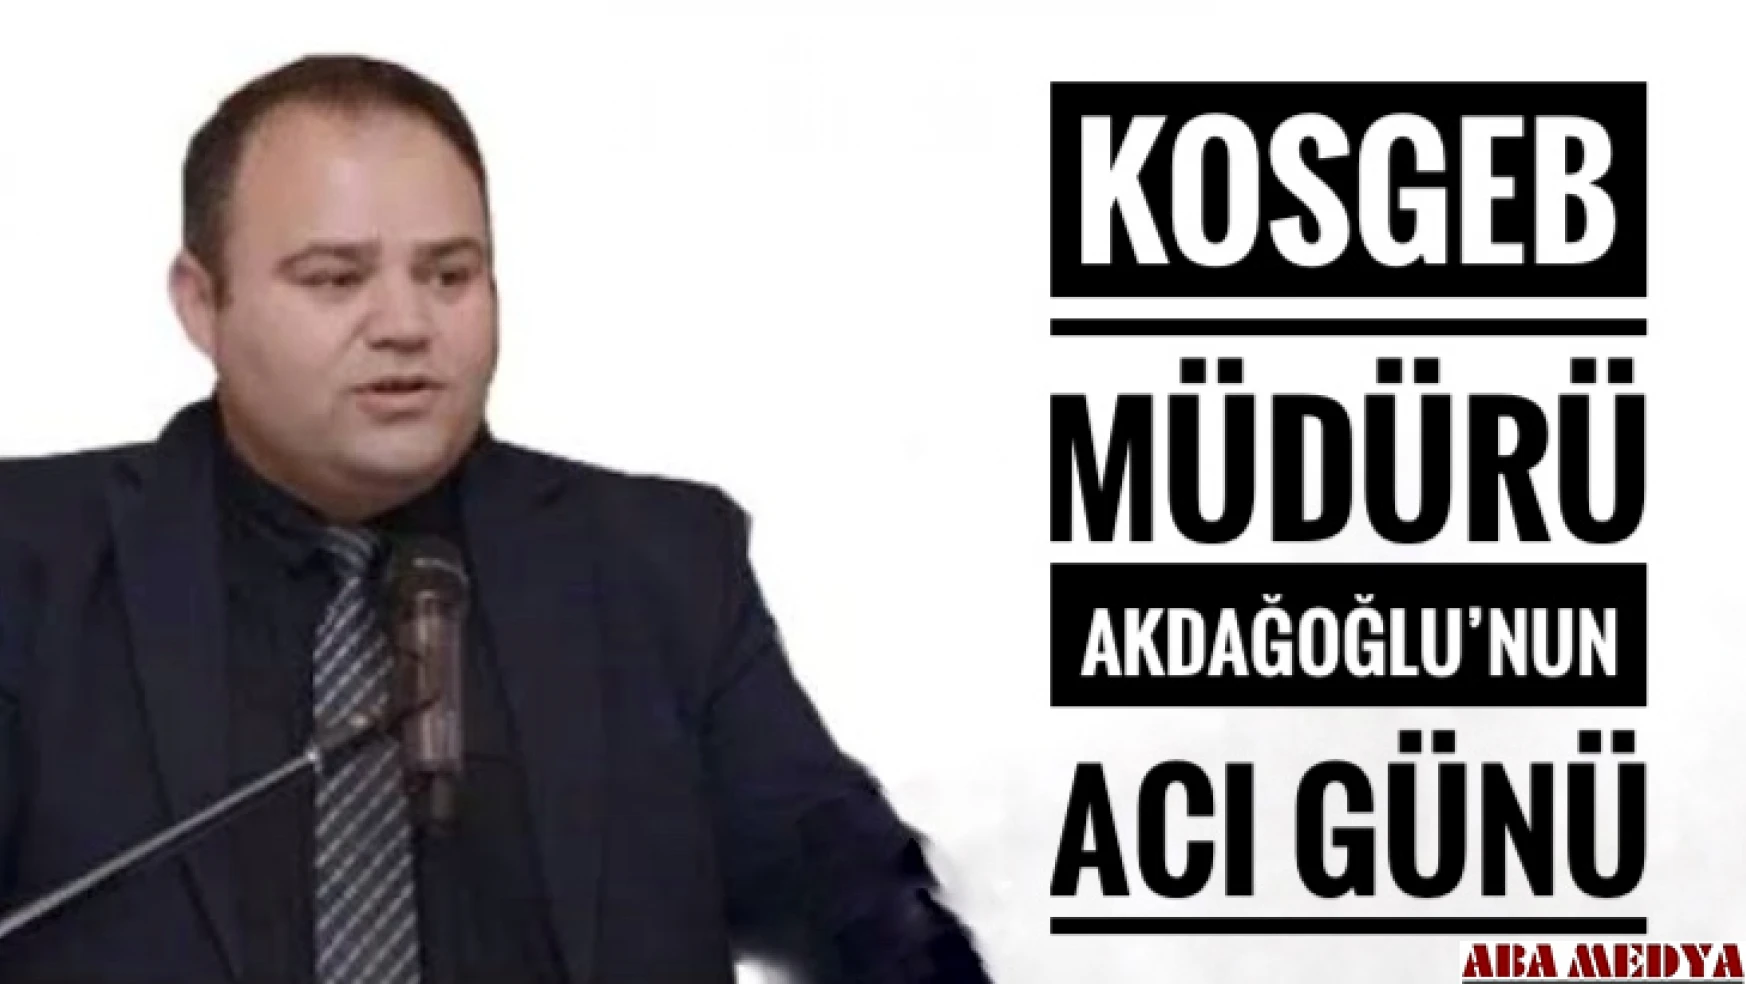 KOSGEB Müdürü Akdağoğlu'nun acı günü